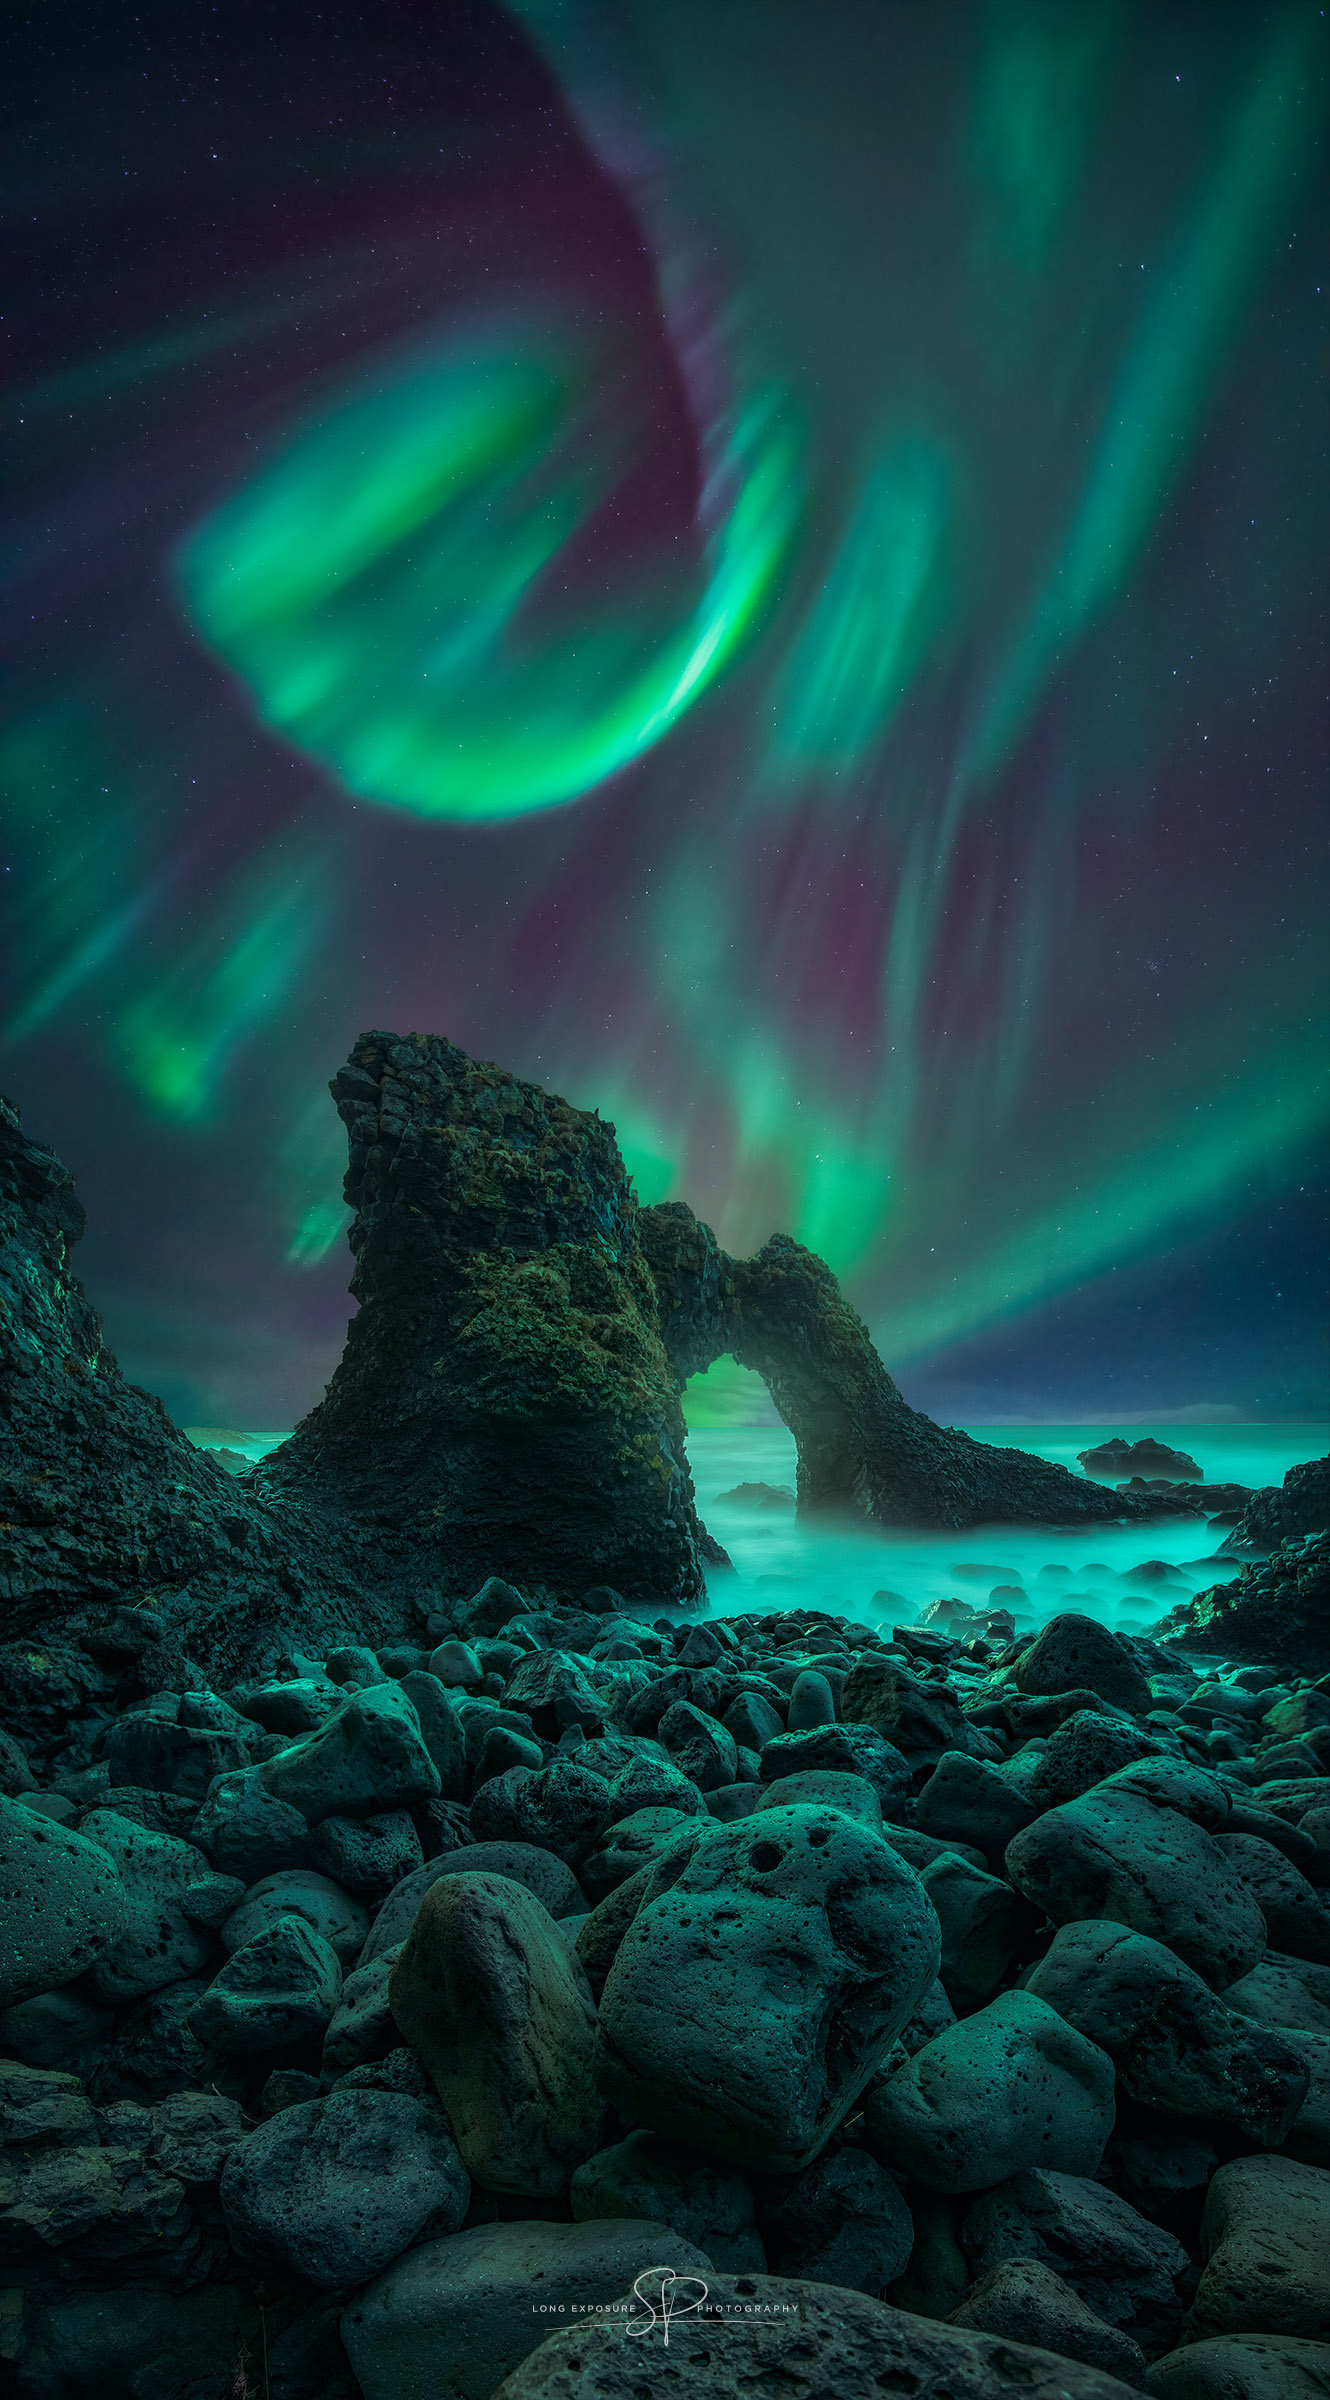 Spiral Aurora over Iceland